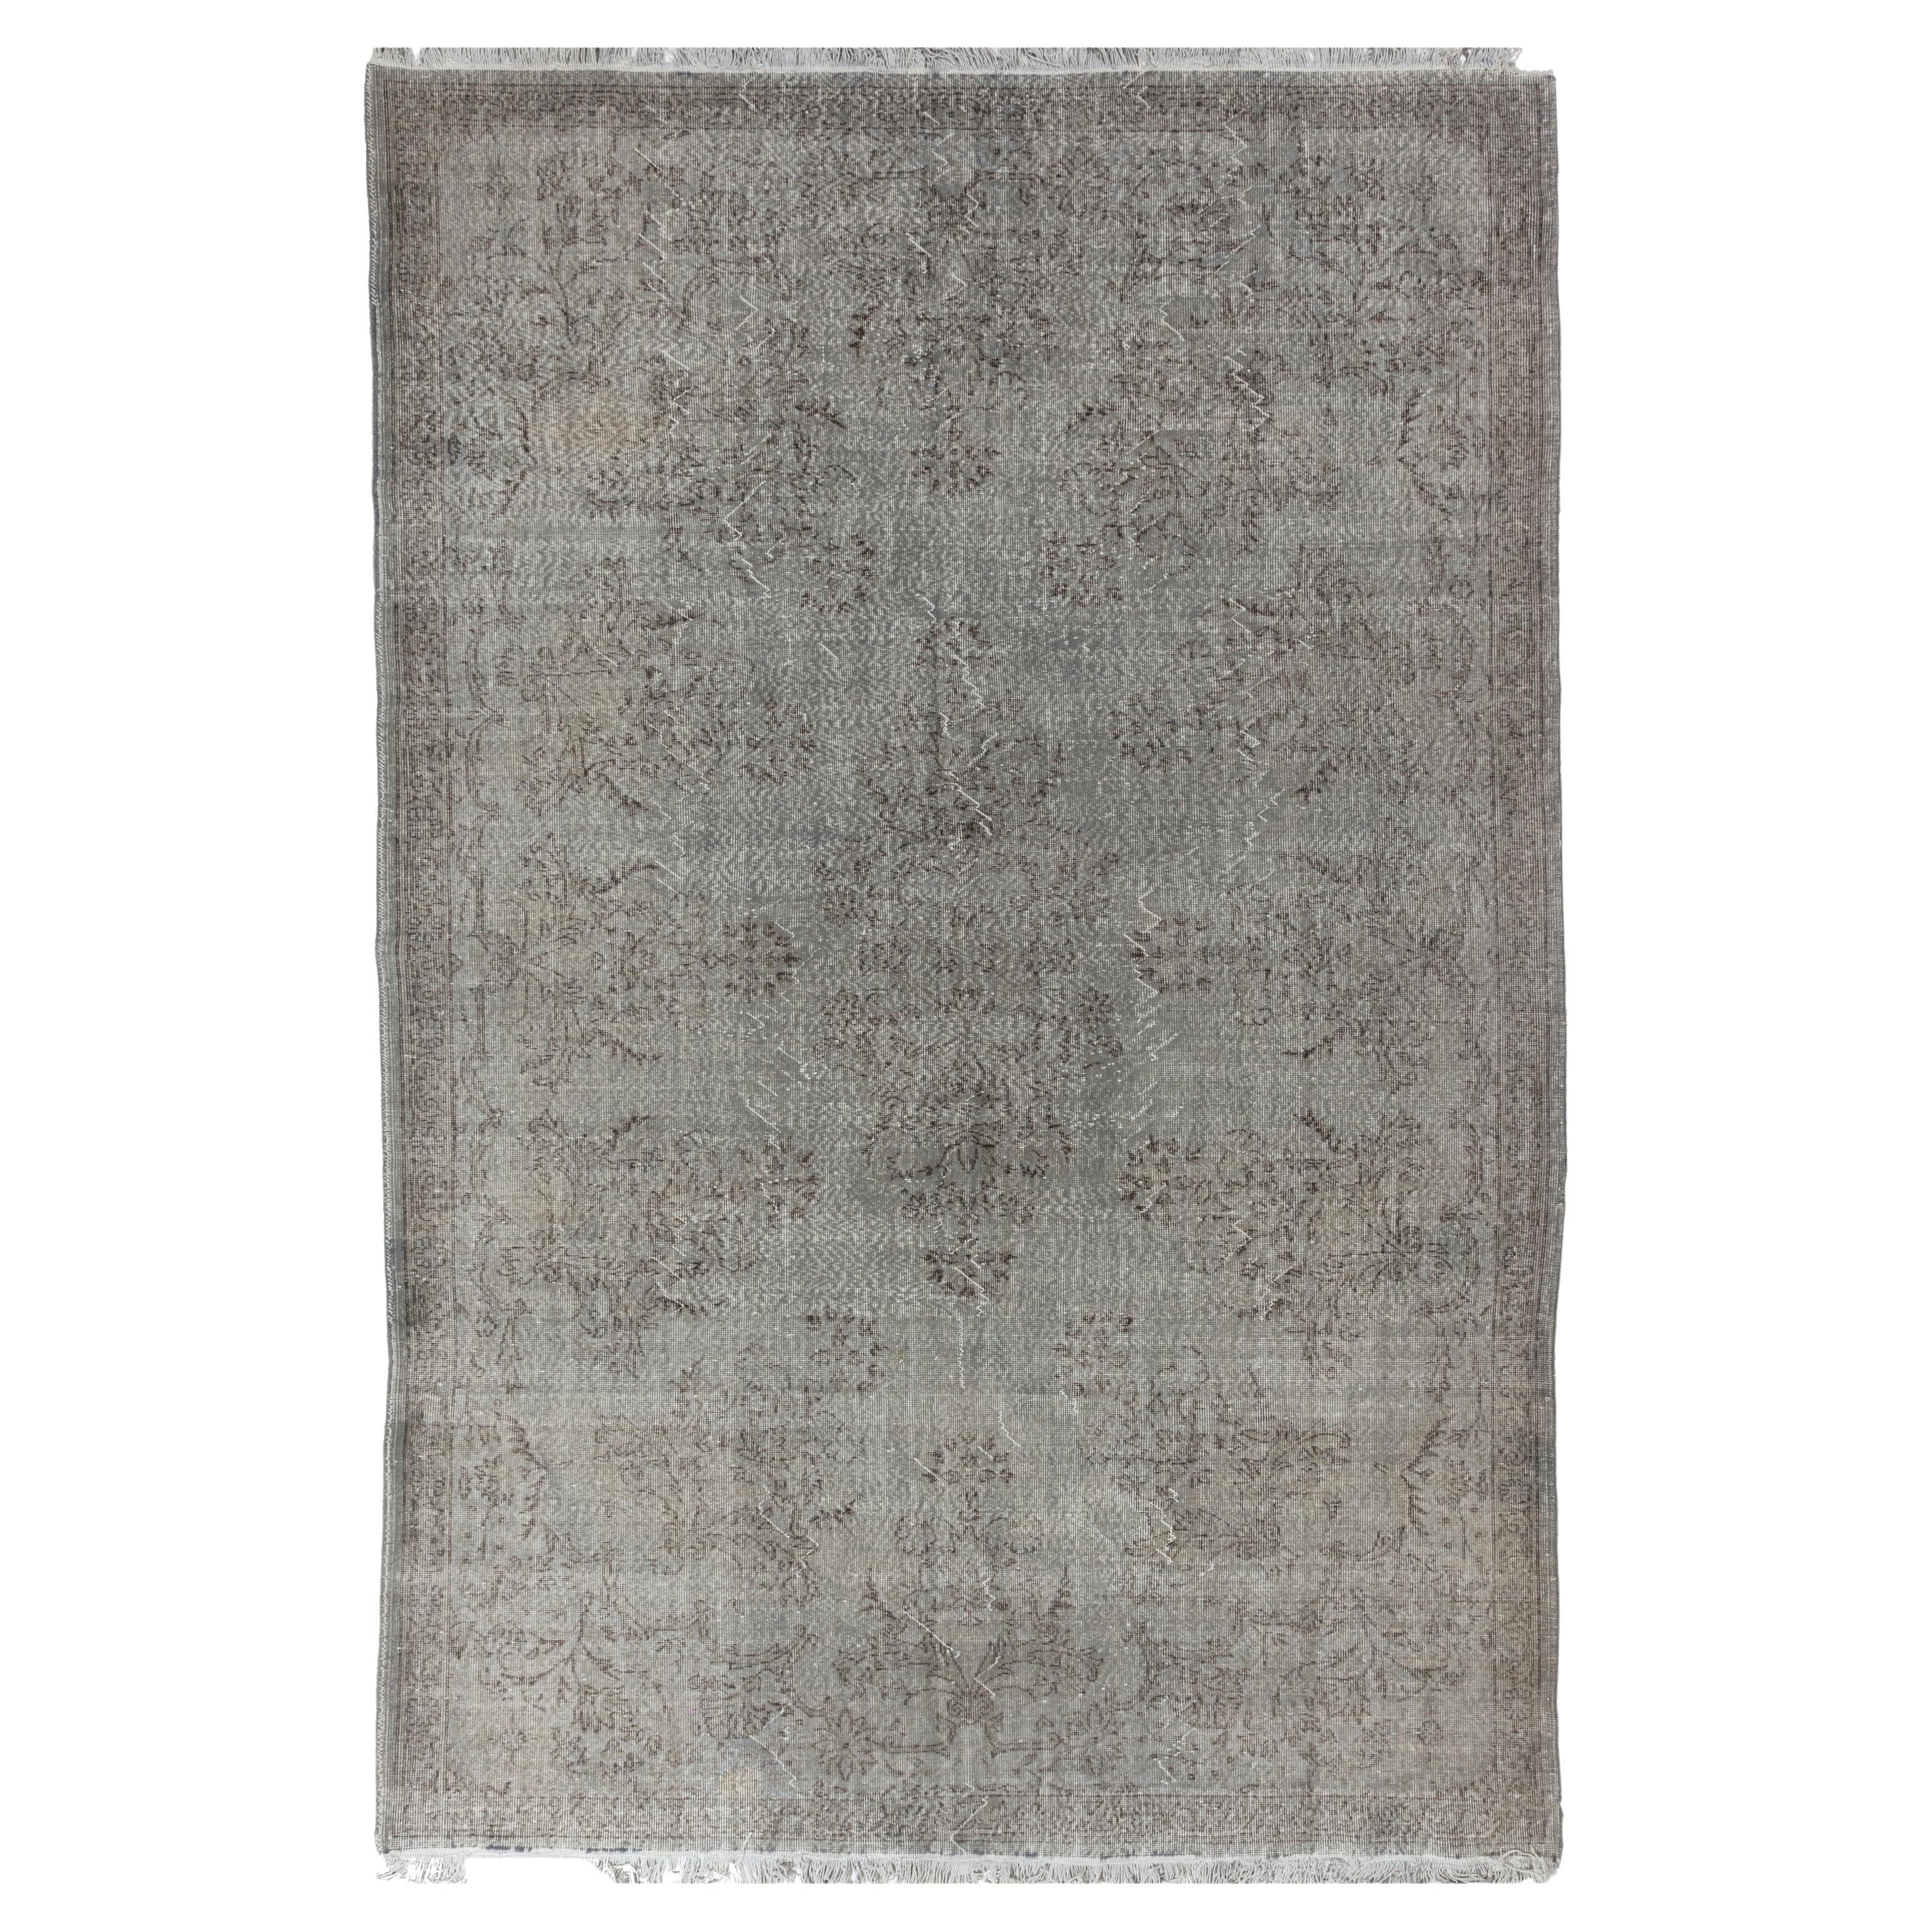 Tapis oriental vintage teinté en gris pour intérieurs contemporains de 7,6 x 1,44 m